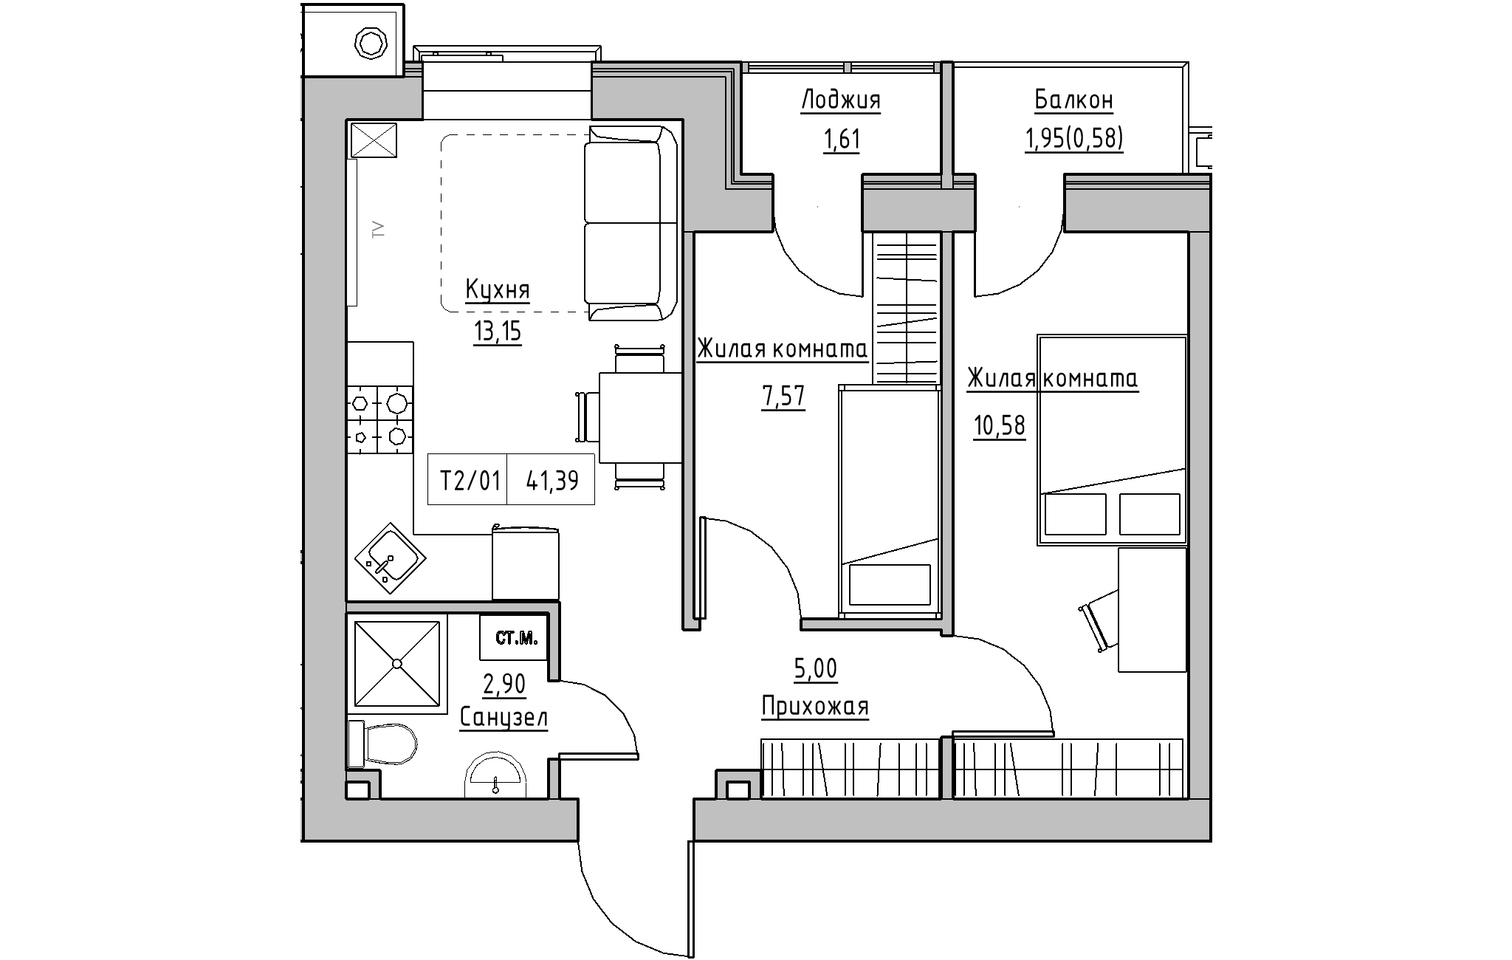 Планування 2-к квартира площею 41.39м2, KS-013-04/0009.